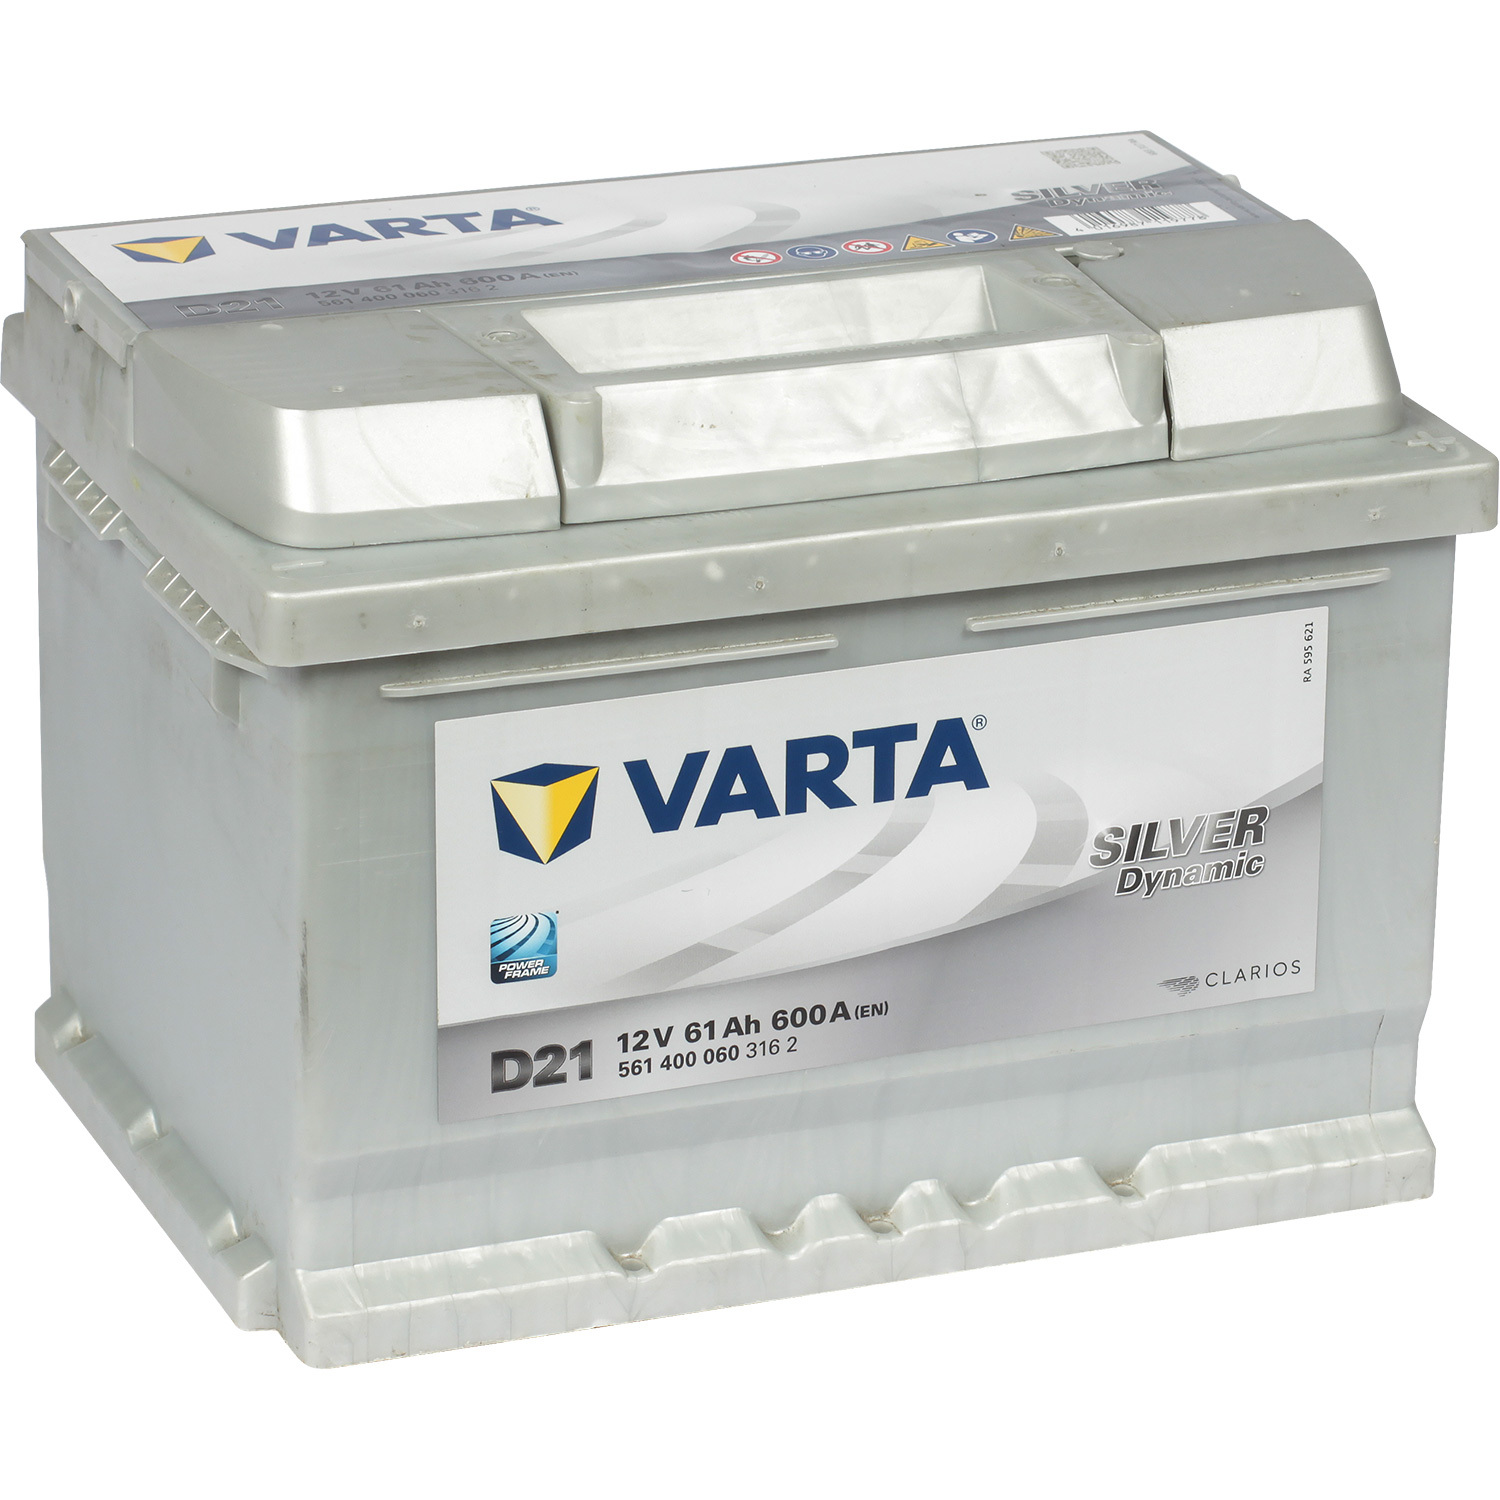 Varta Автомобильный аккумулятор Varta Silver Dynamic 561 400 060 61 Ач обратная полярность LB2